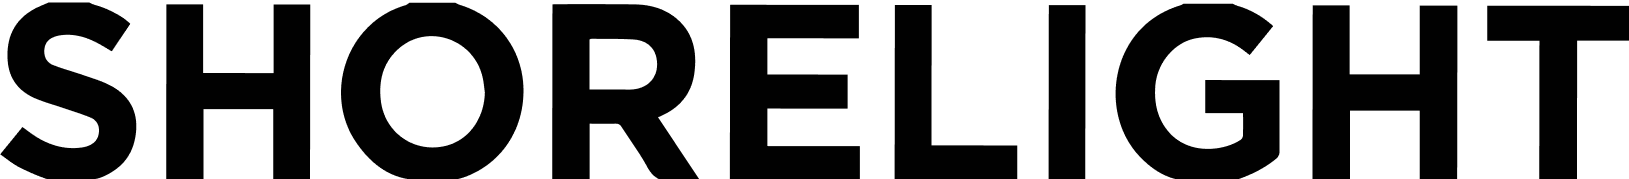 Shorelight logo